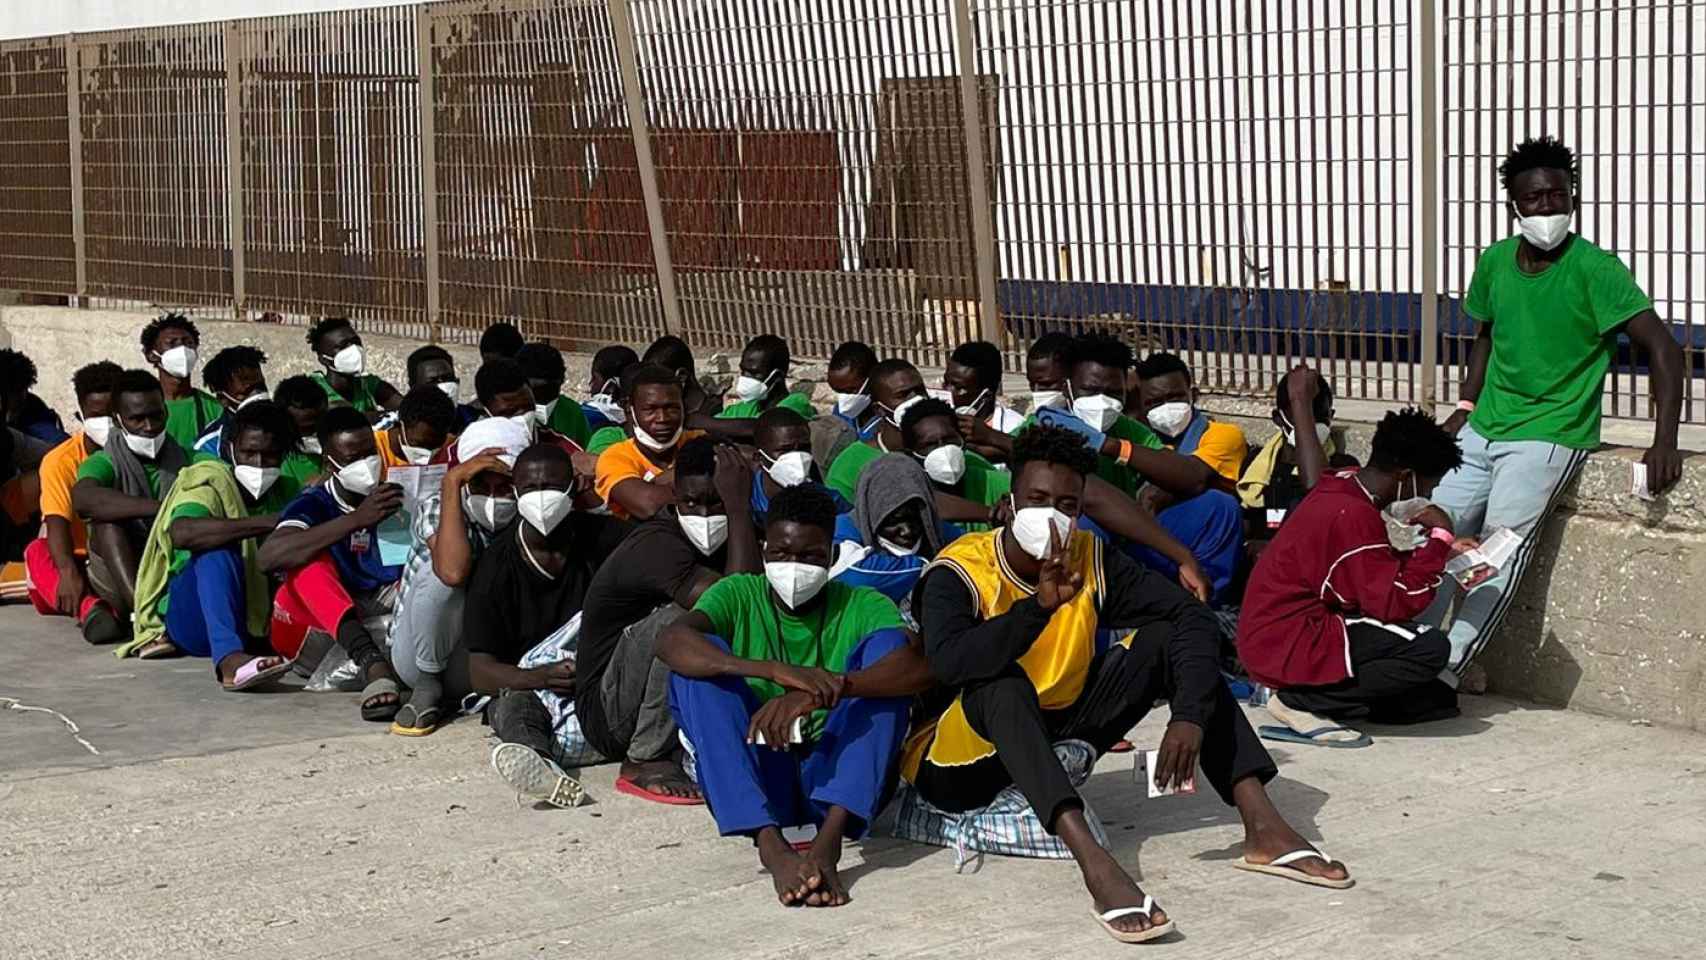 Migrantes este jueves en el puerto de Lampedusa esperando embarcar un ferry con destino a Sicilia.